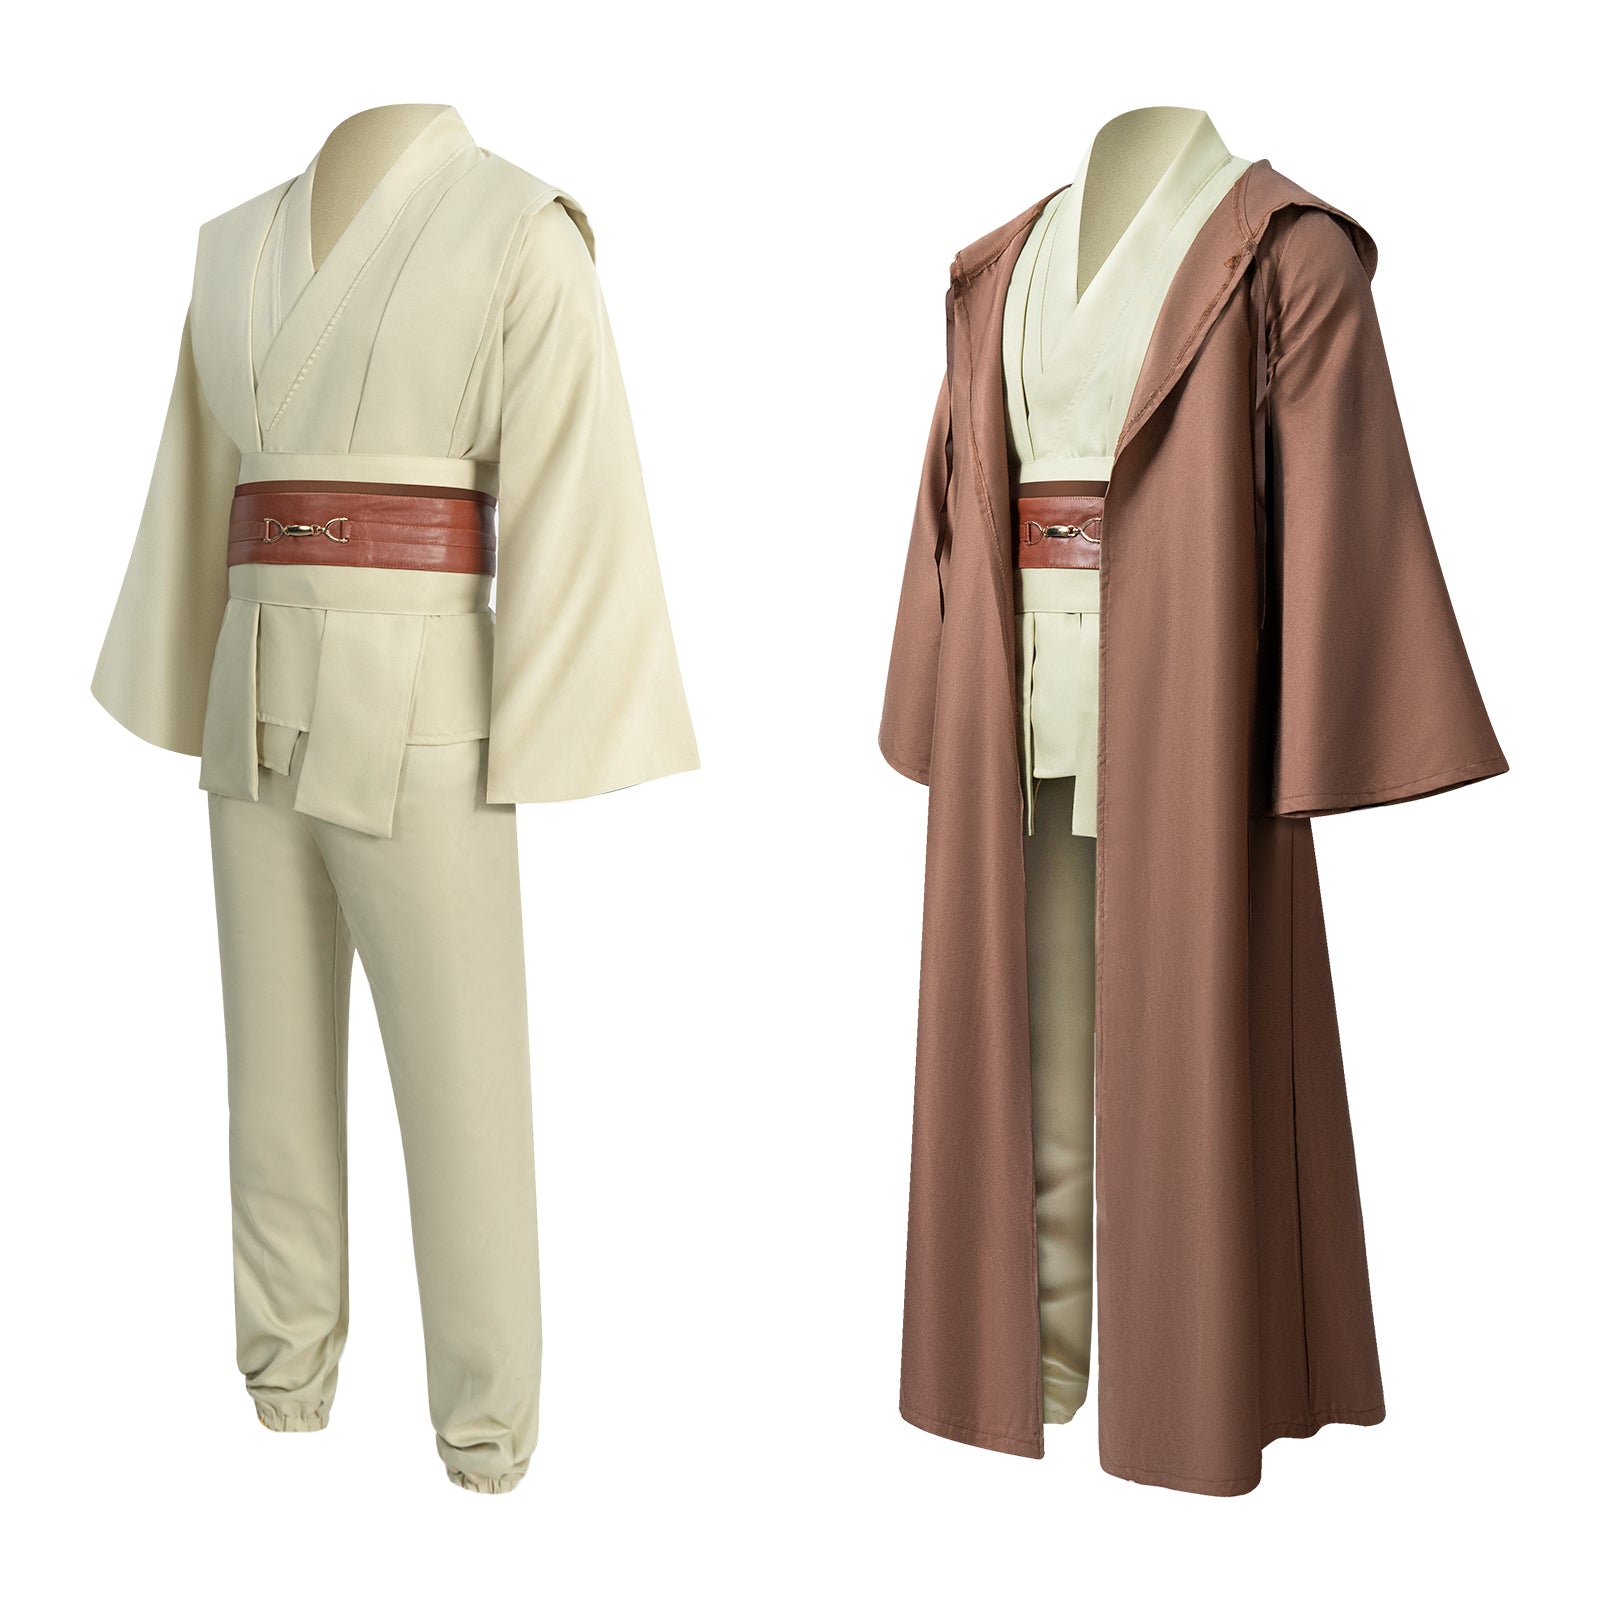 Master Obi Costume